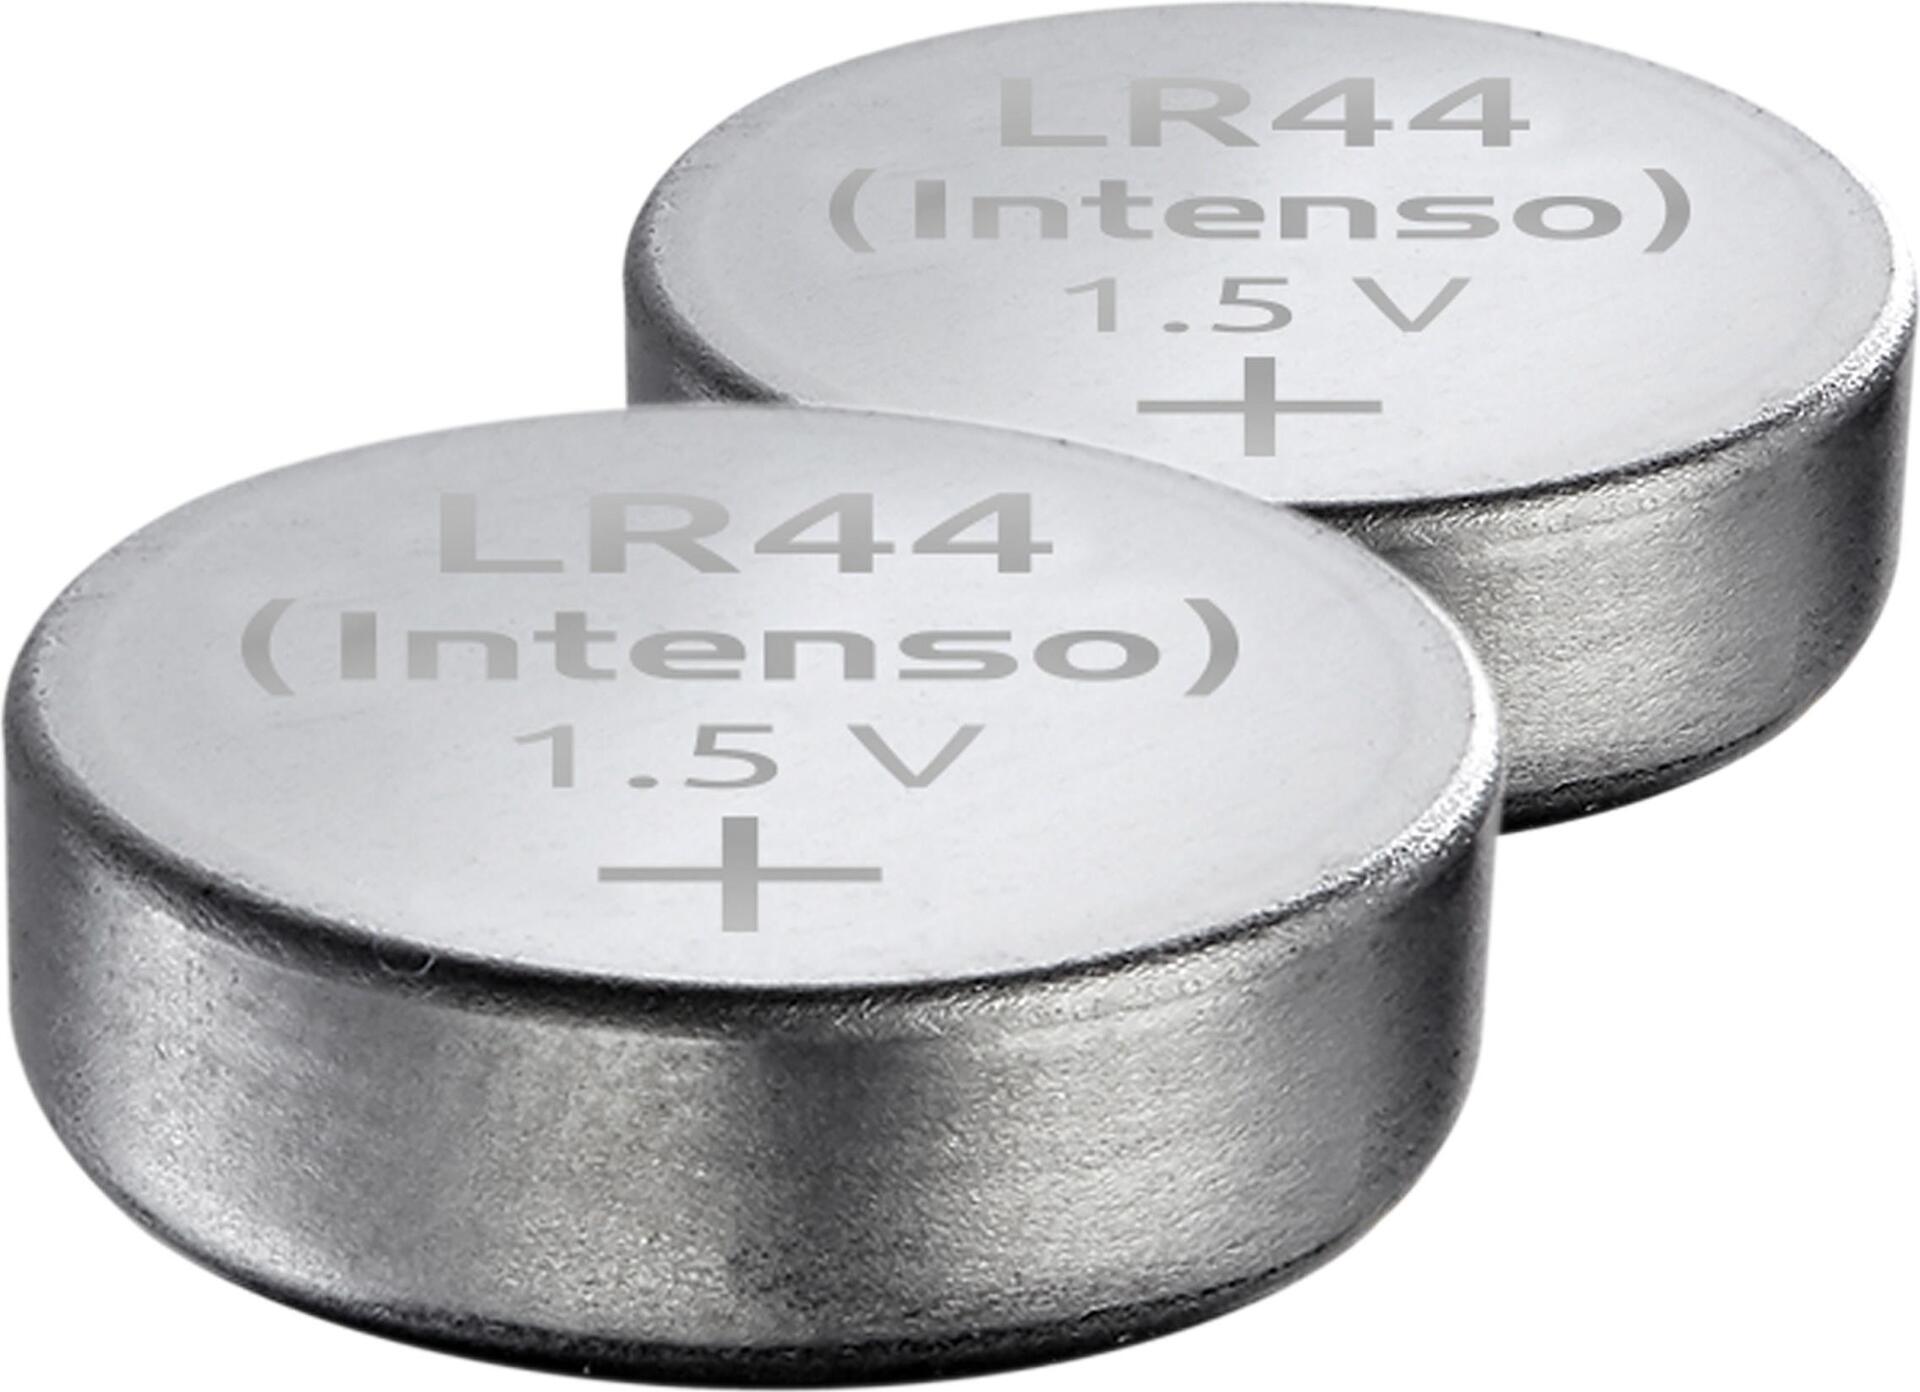 Intenso LR 44 Alkaline Energy 2er Blister (7503422)